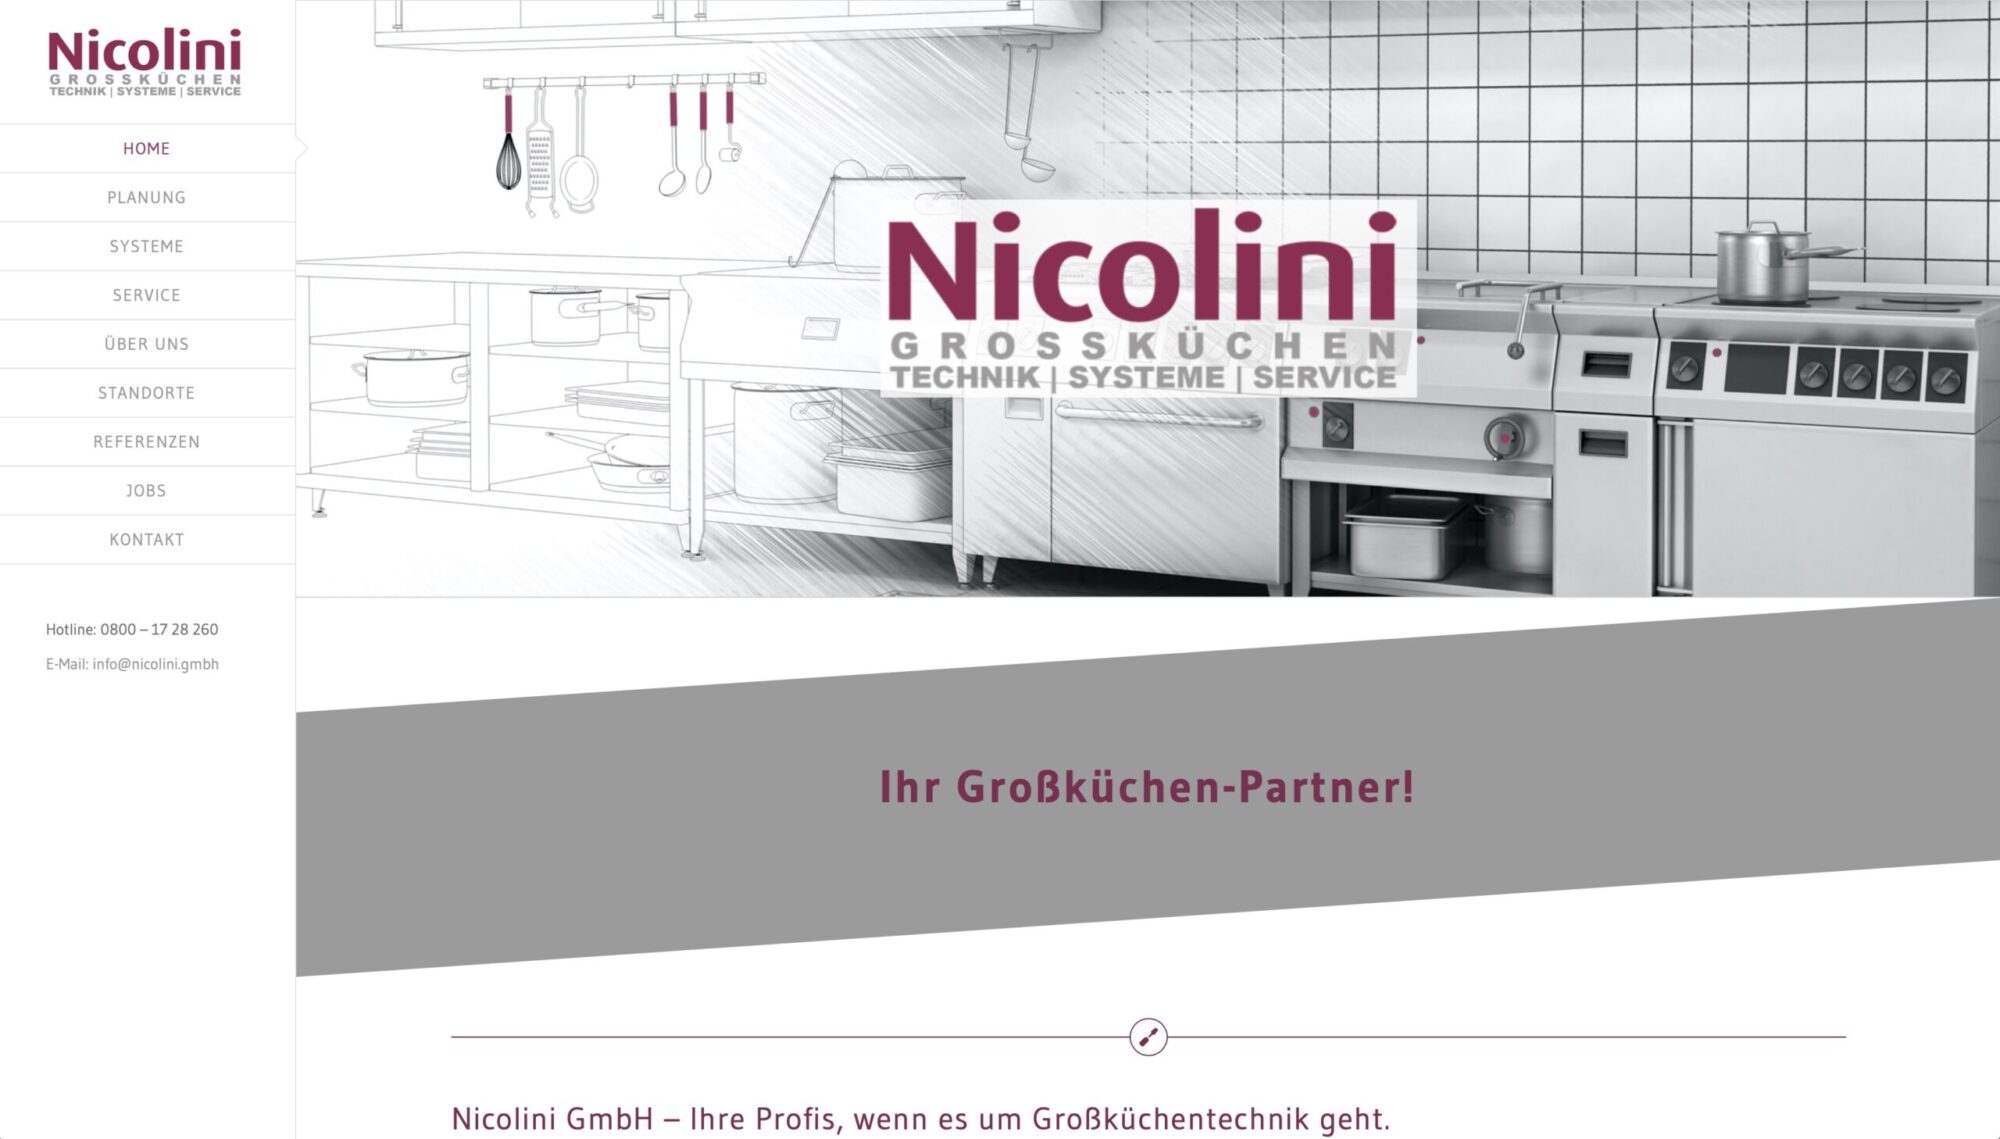 Nicolini Großküchentechnik, Monheim am Rhein